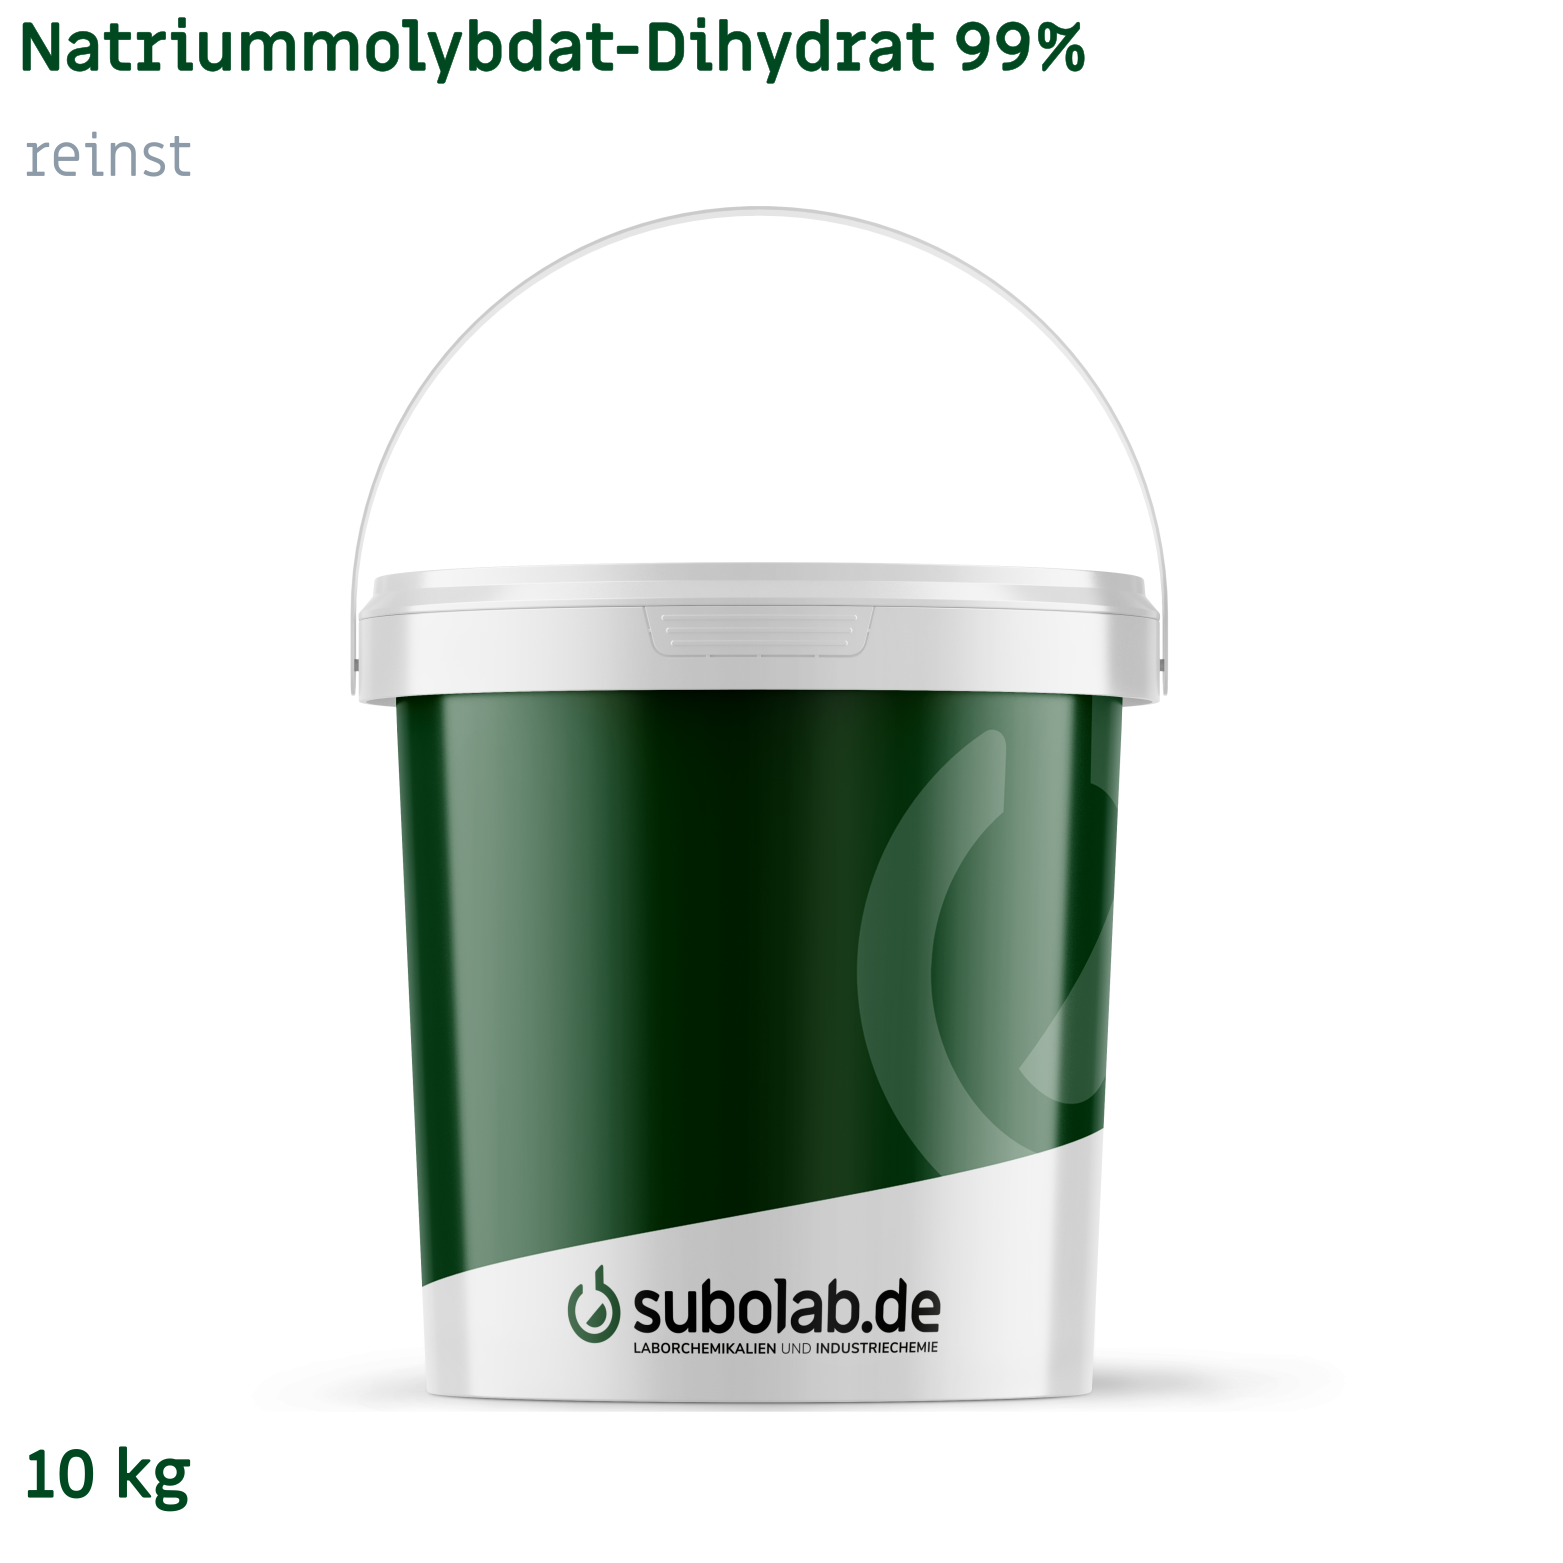 Bild von Natriummolybdat - Dihydrat 99% reinst (10 kg)